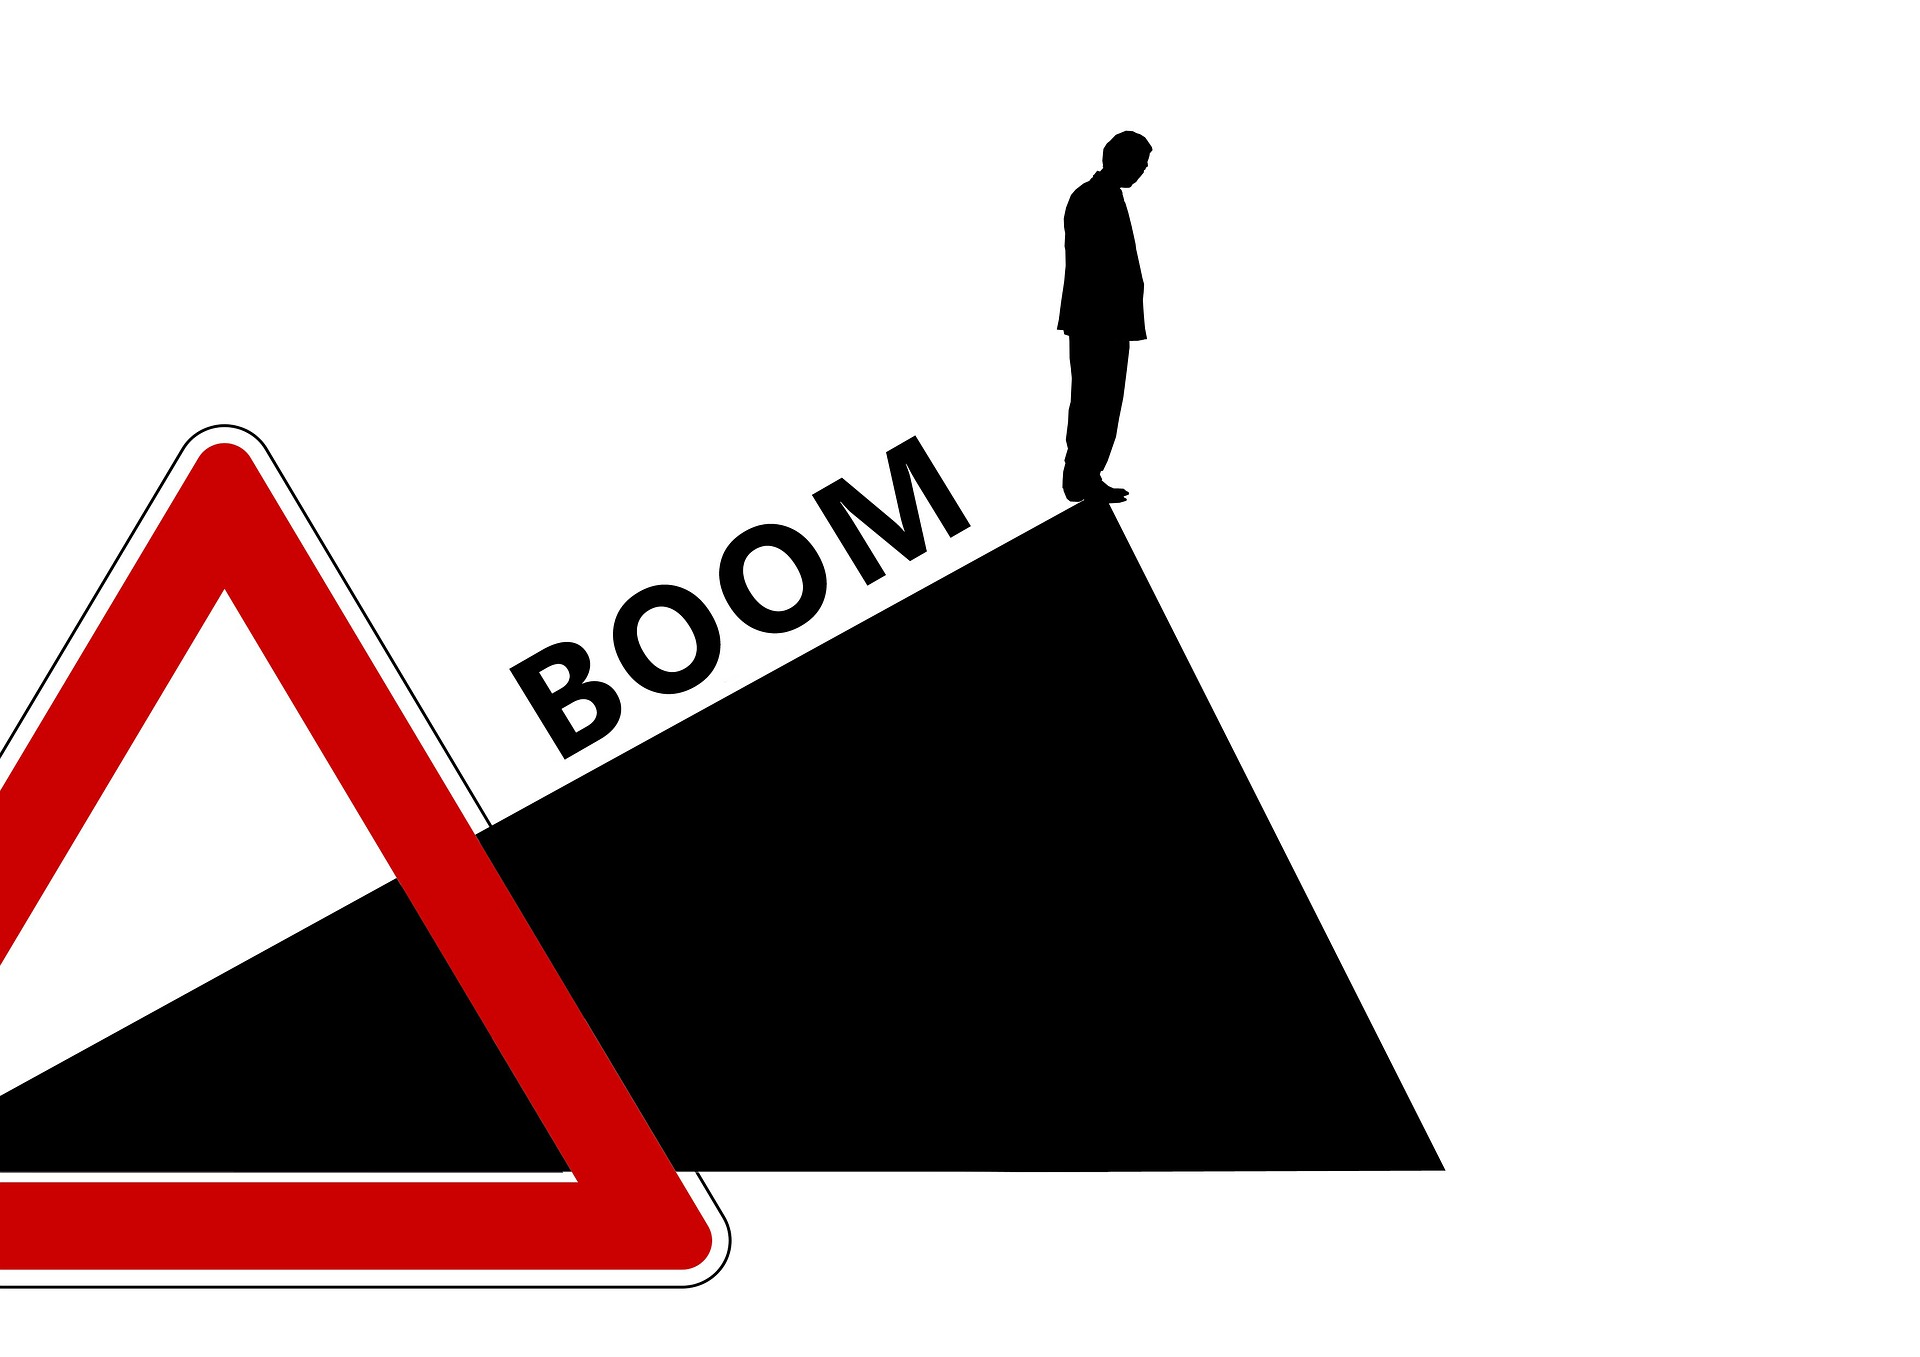 Abwandlung eines Straßenschilds, auf dem ein Mann am höchsten Punkt der Steigung steht und nach unten guckt